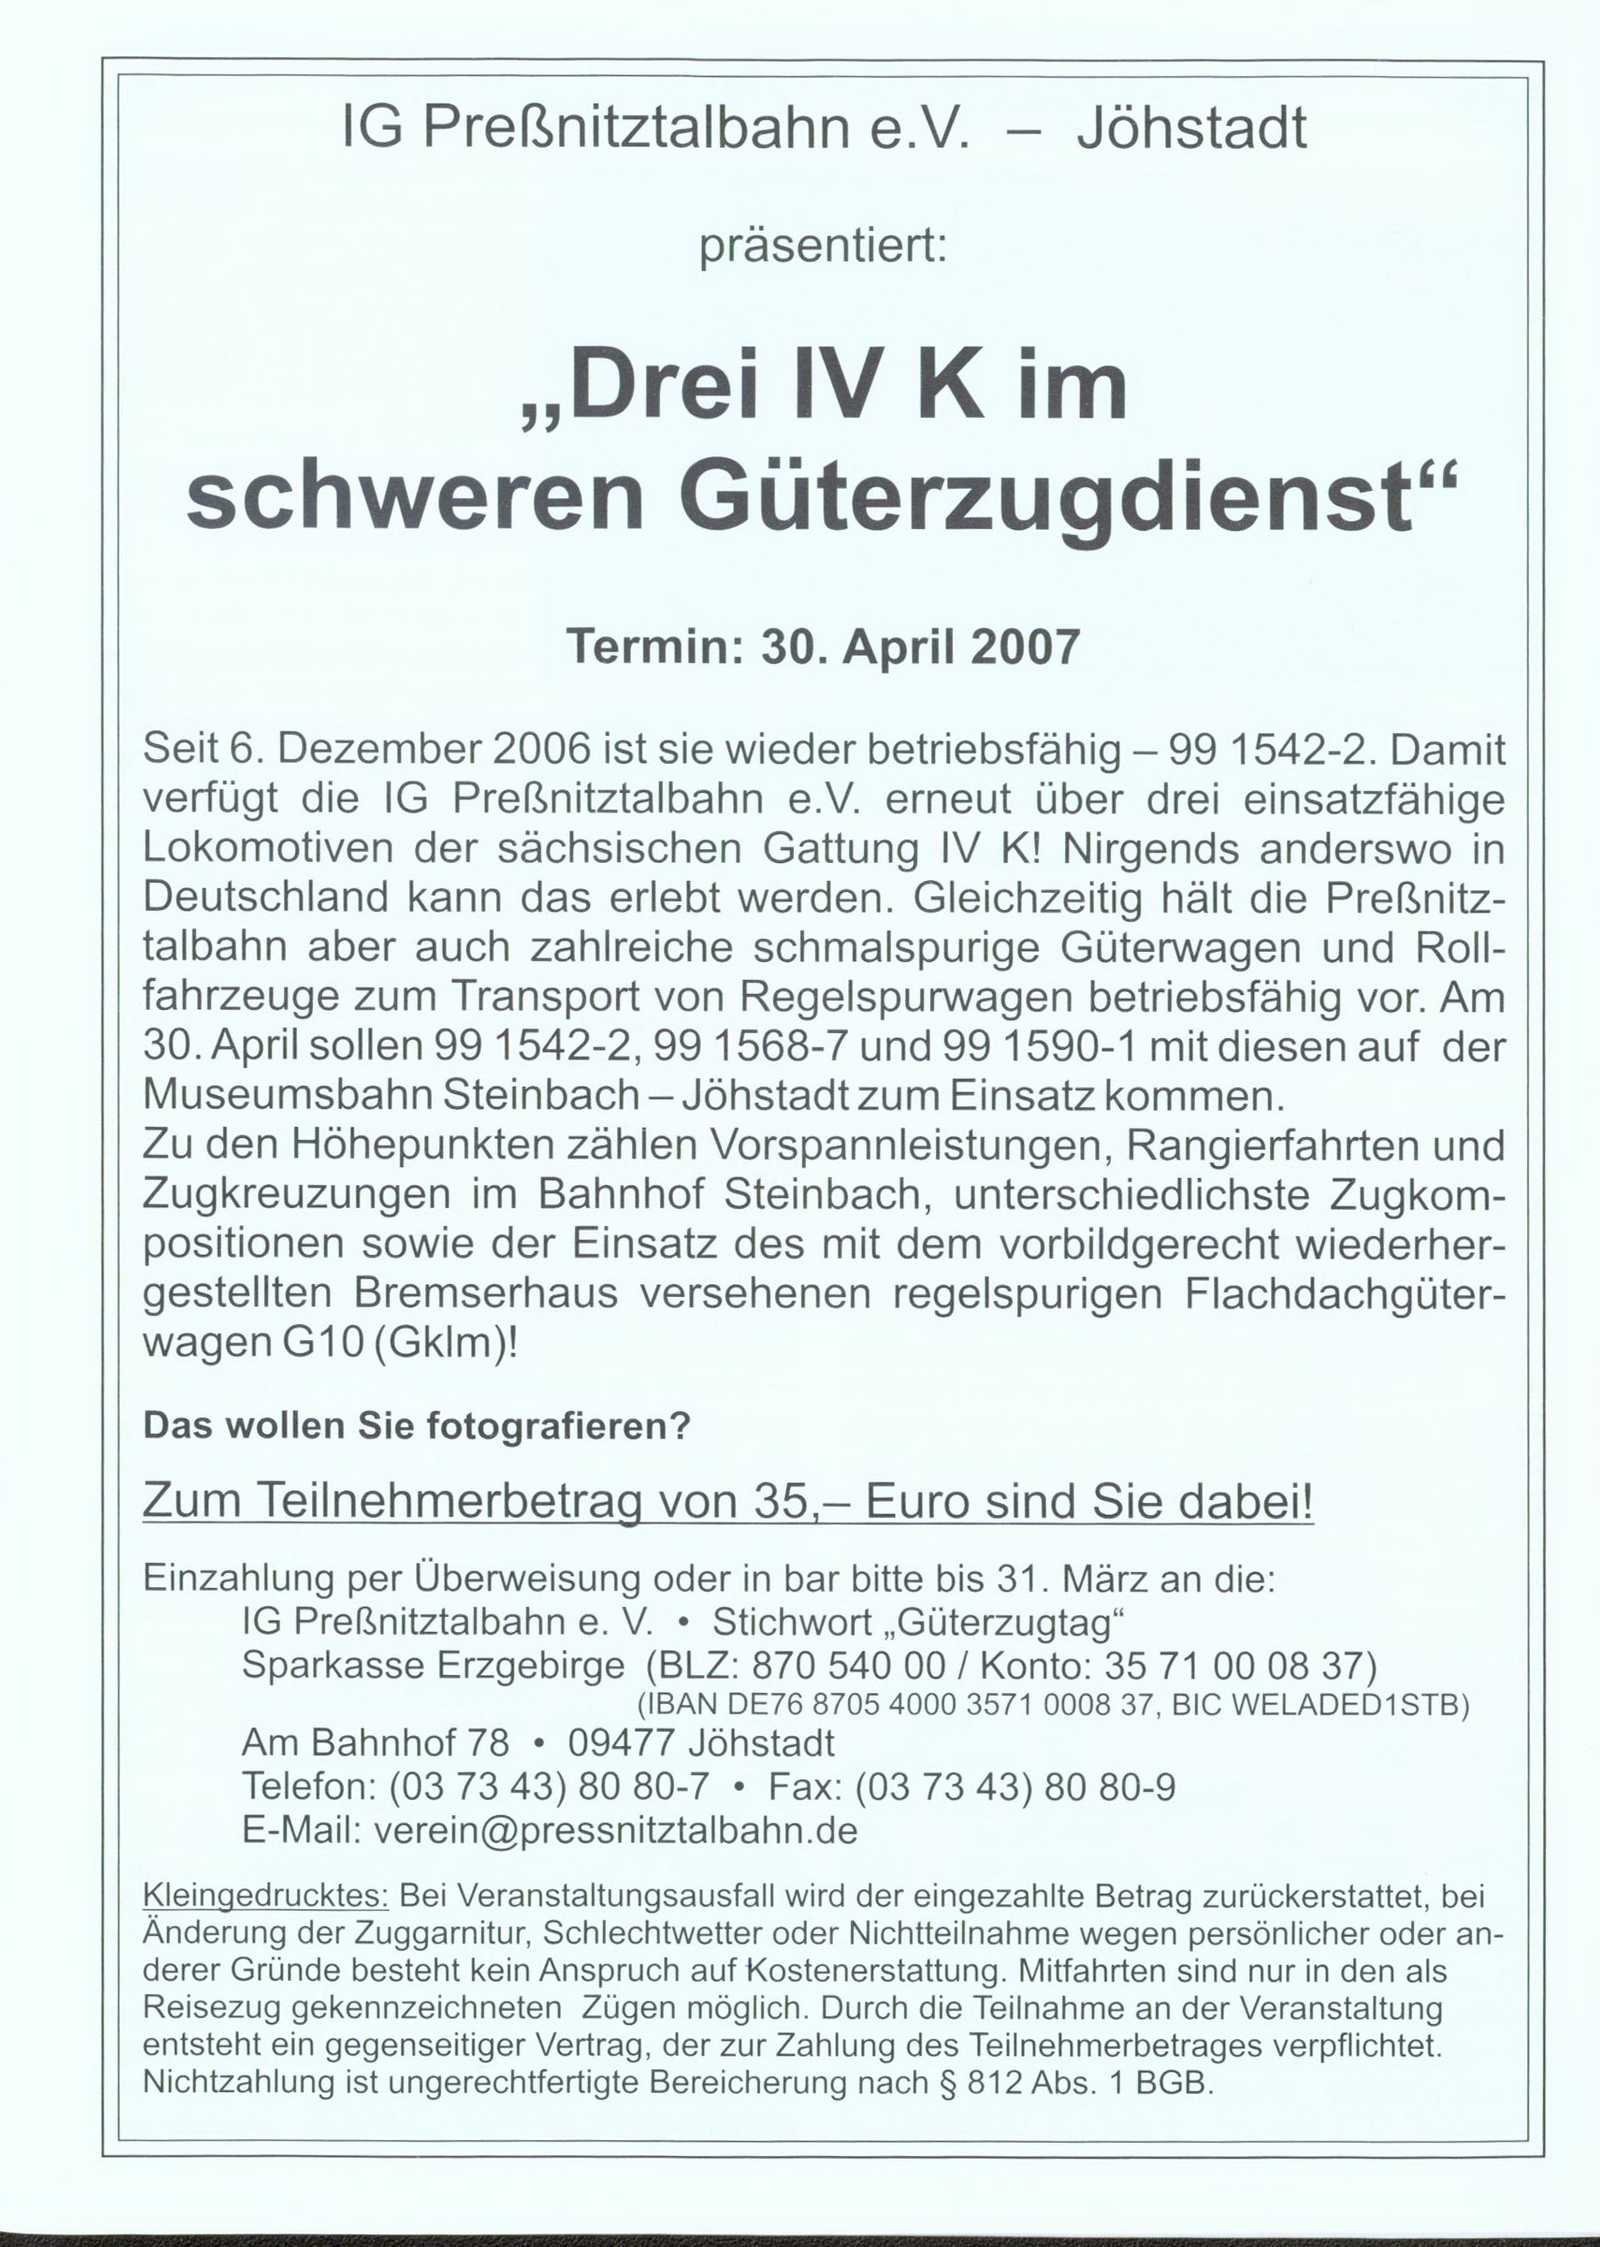 Veranstaltungsankündigung 30. April 2007: Foto-Güterzugveranstaltung „Drei IV K im schweren Güterzugdienst“